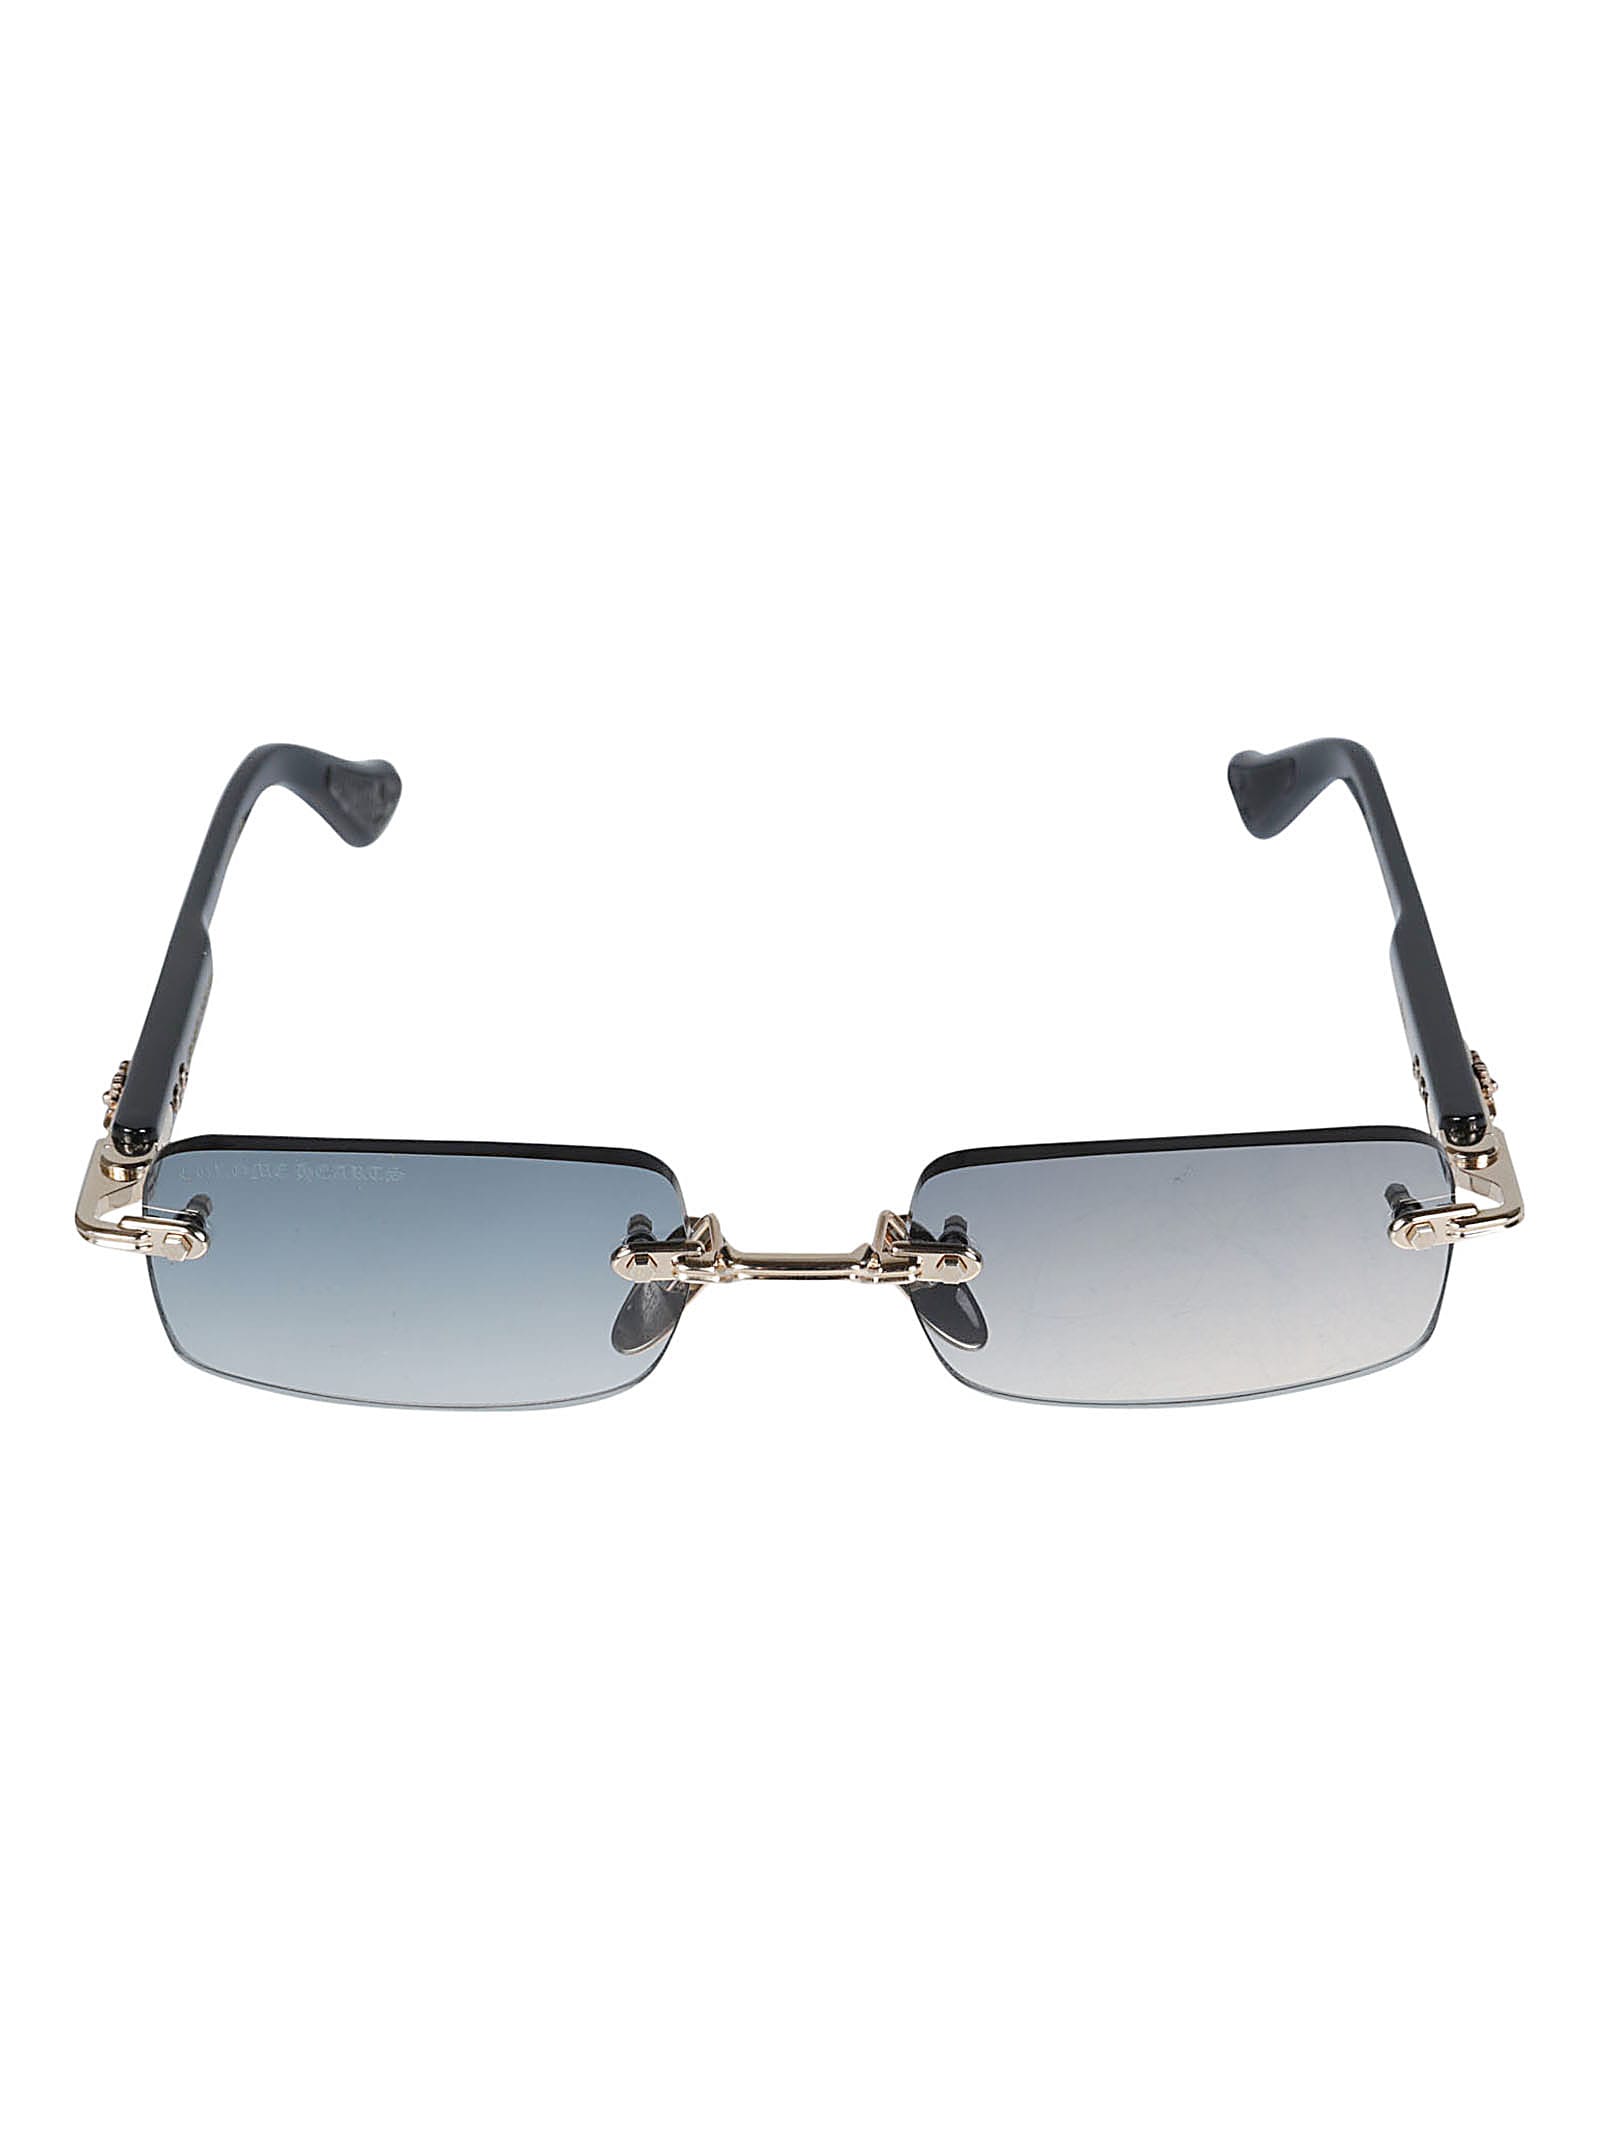 Chrome Hearts Rectangle Rimless Sunglasses